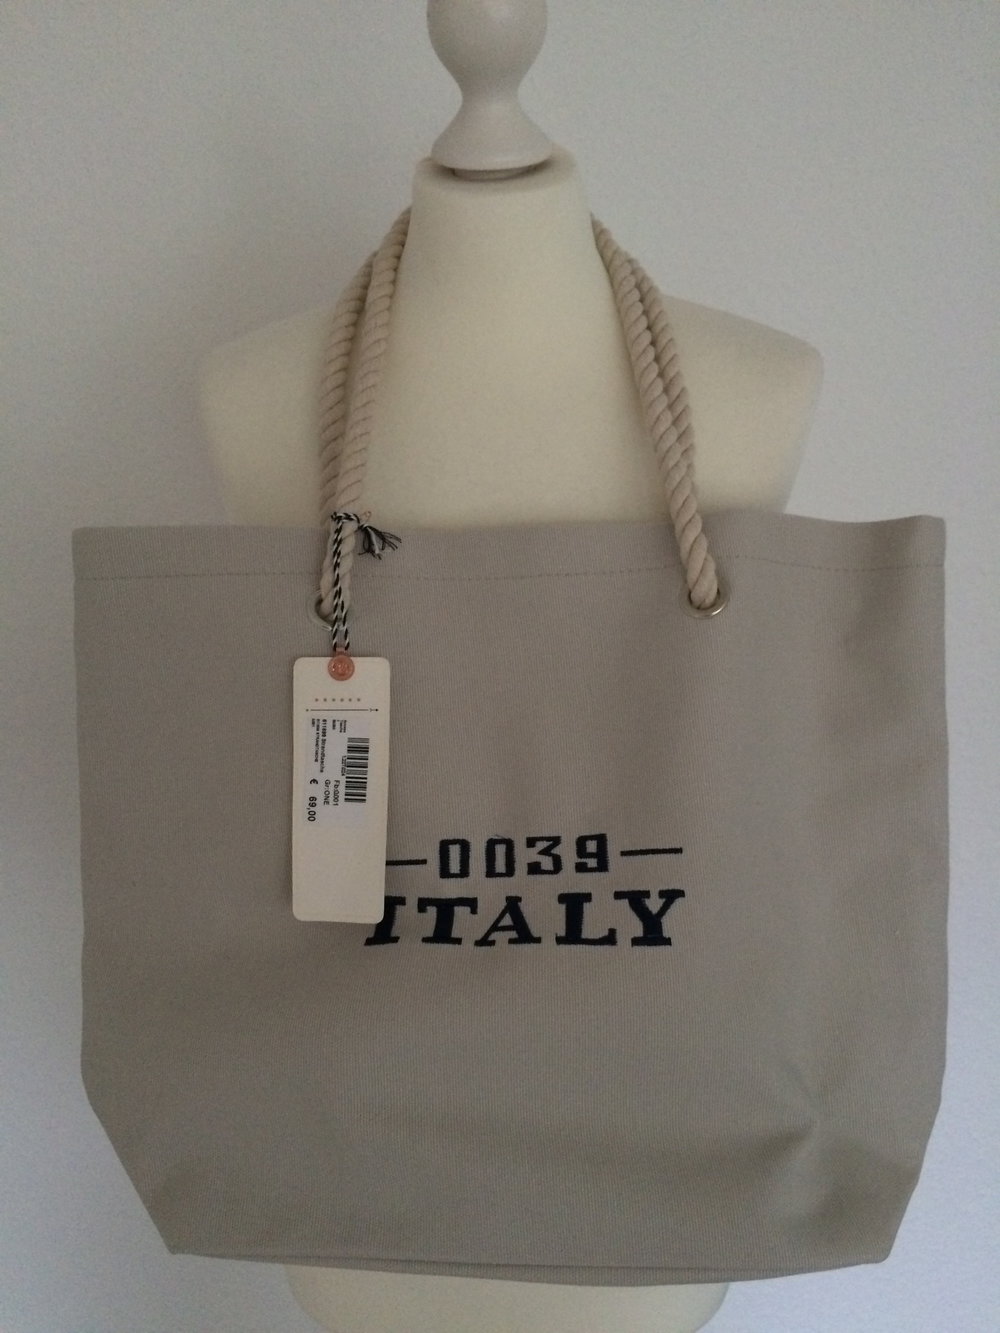 Handtasche 0039 Italy Tasche Stofftasche OVP Neu mit Etikett blau grau weiss beige